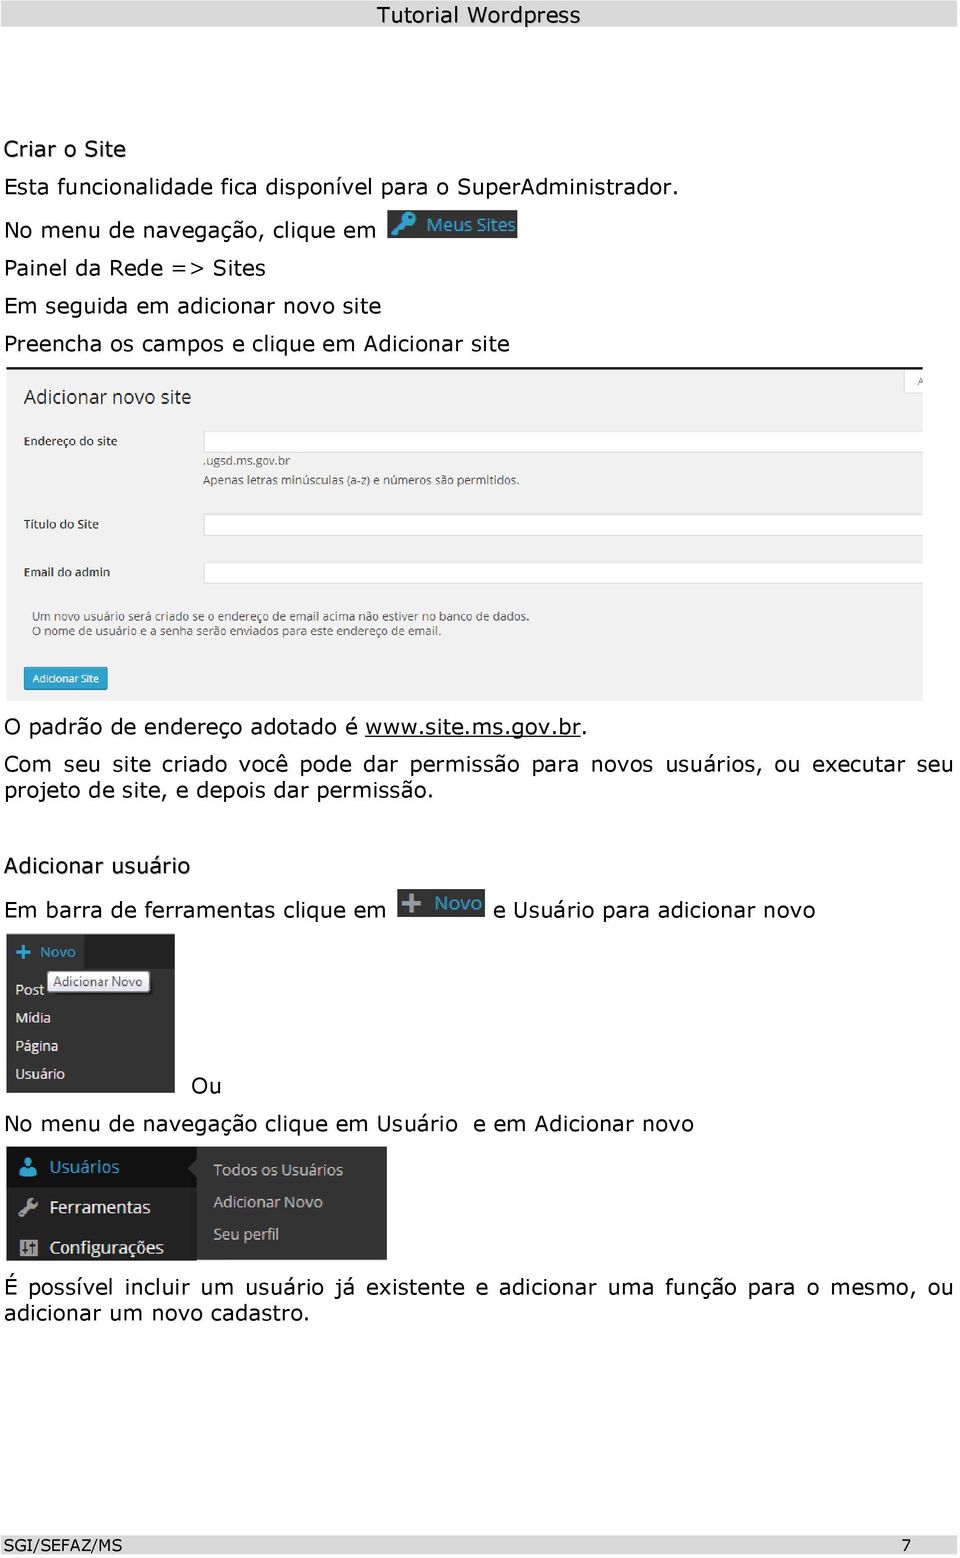 adotado é www.site.ms.gov.br. Com seu site criado você pode dar permissão para novos usuários, ou executar seu projeto de site, e depois dar permissão.